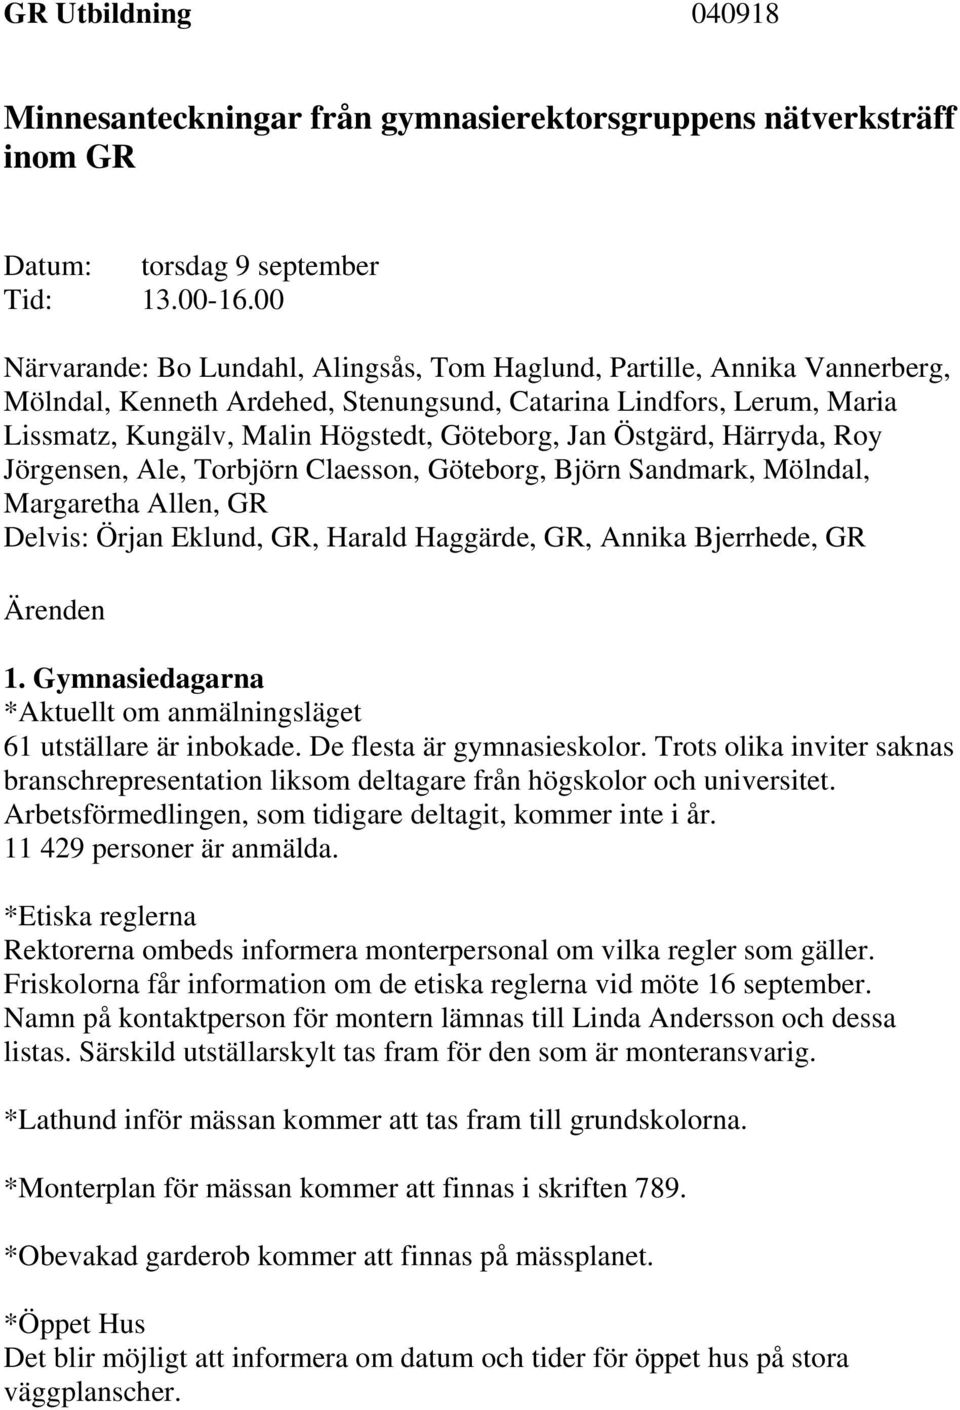 Östgärd, Härryda, Roy Jörgensen, Ale, Torbjörn Claesson, Göteborg, Björn Sandmark, Mölndal, Margaretha Allen, GR Delvis: Örjan Eklund, GR, Harald Haggärde, GR, Annika Bjerrhede, GR Ärenden 1.